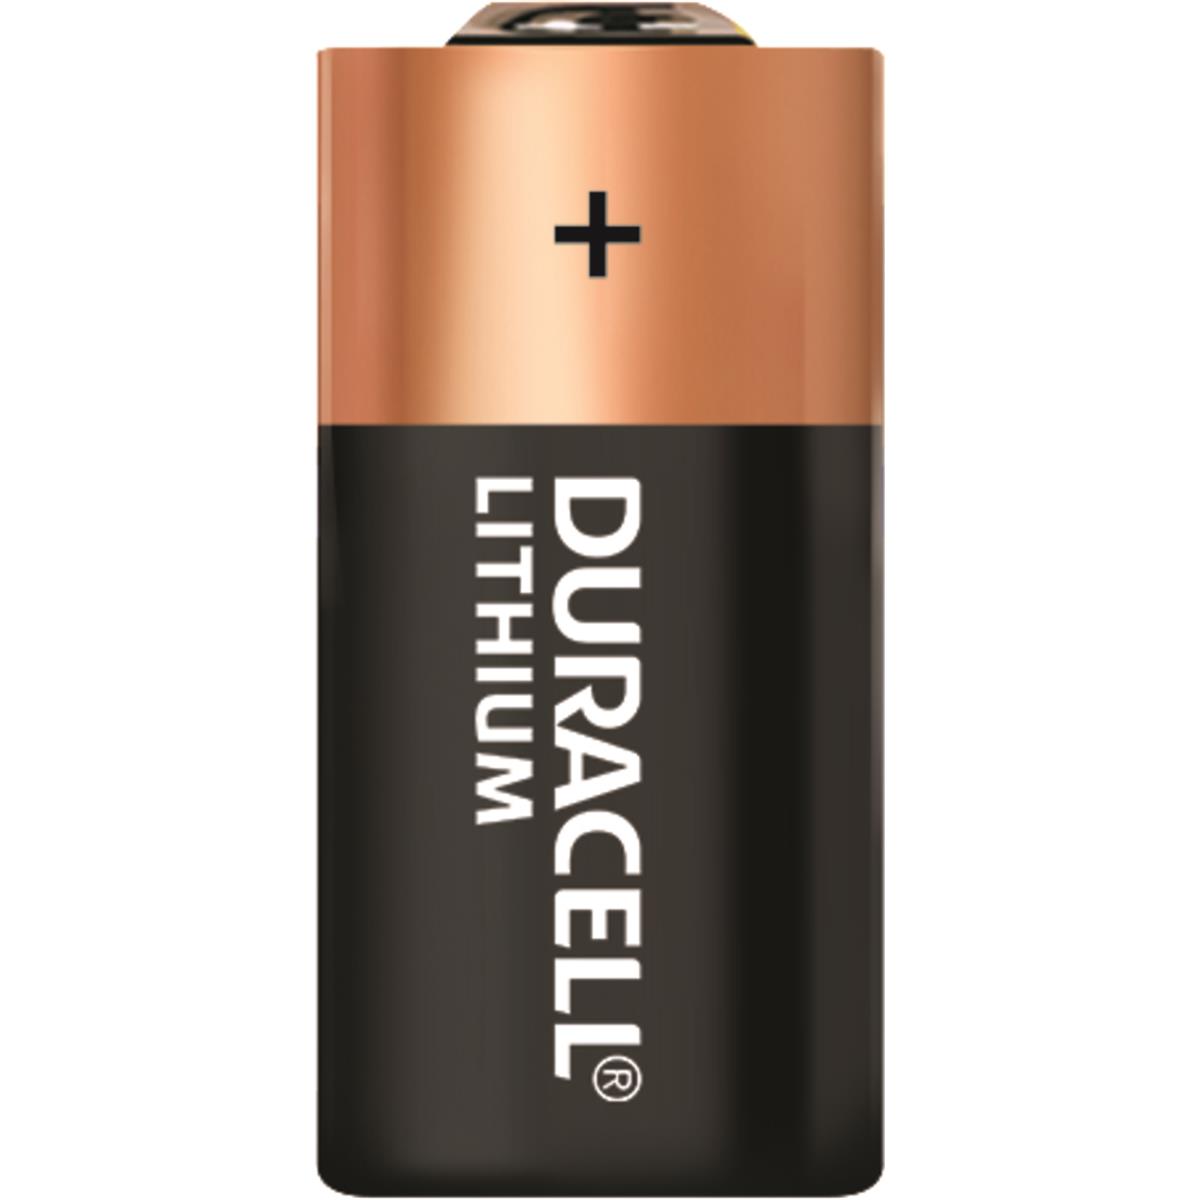 Duracell HIGH POWER LITHIUM CR2 3V Primär CR17355 Fotobatterie (2er Blister)  